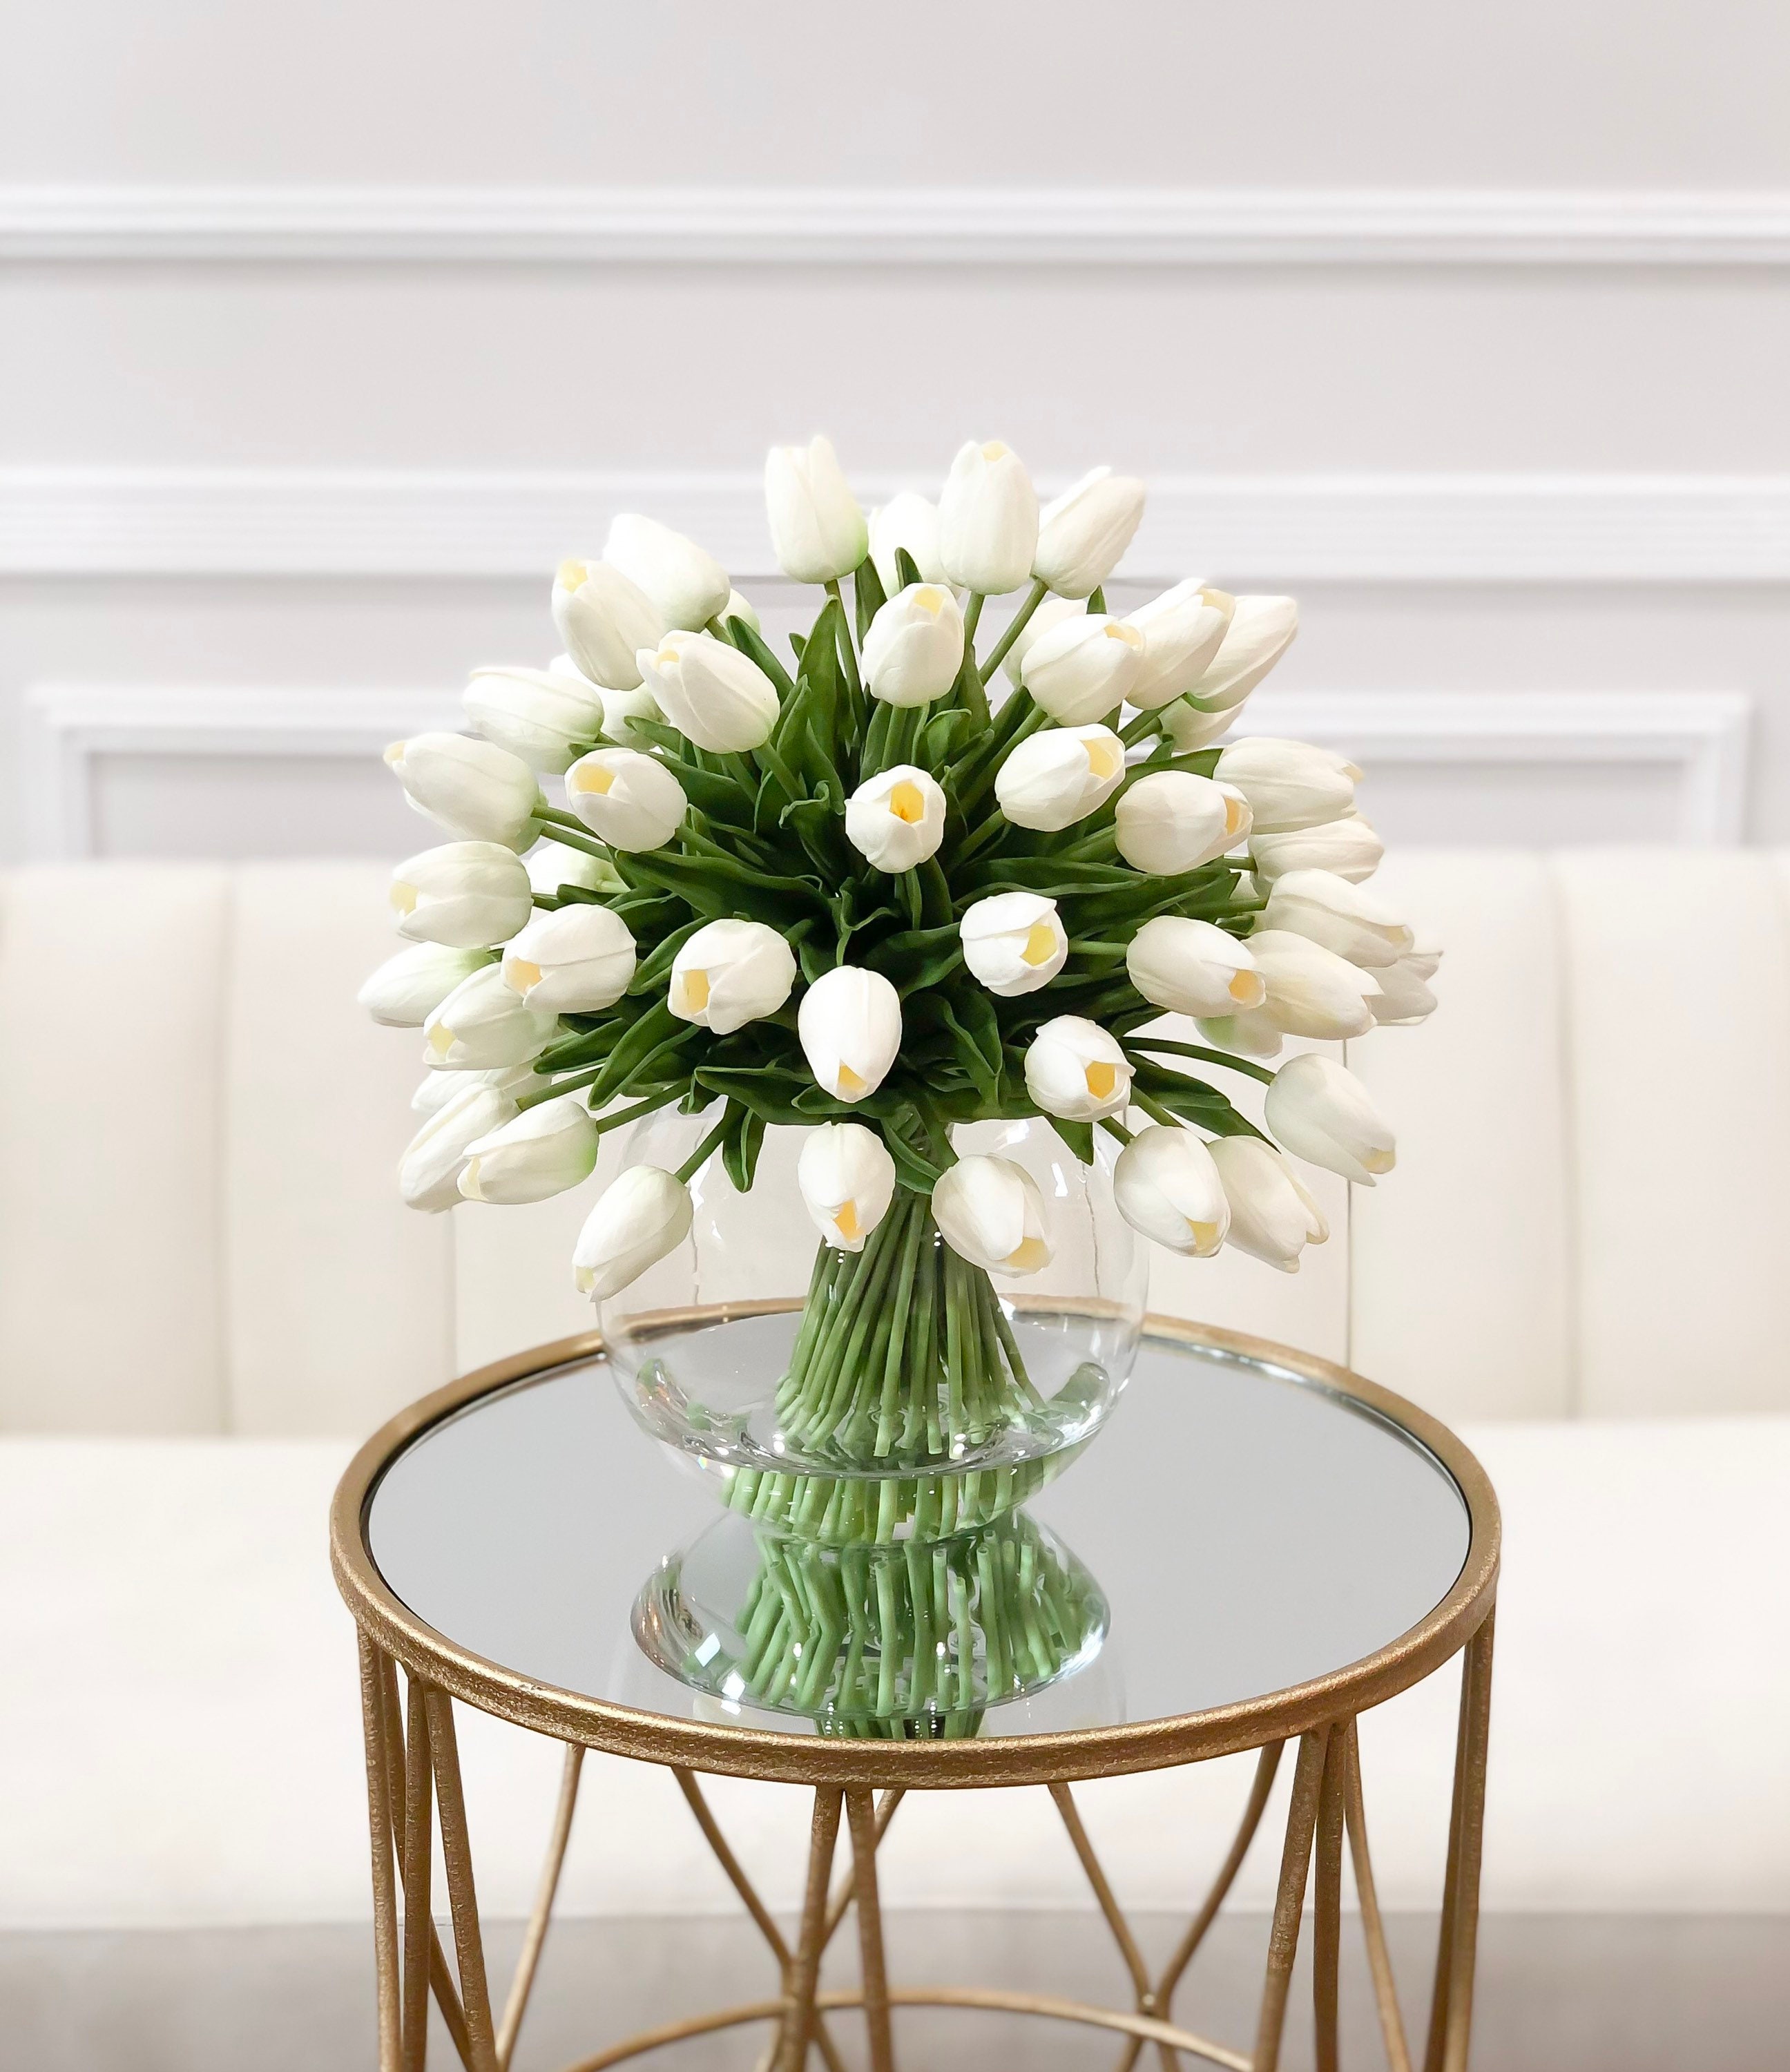 X-Large 60 Tulpen Mittelstück Glasvase-Finest Real Touch Weiße Tulpen-Französisches  Land Künstliche Blumen-Mittelstück-Modernes Faux Arrangement